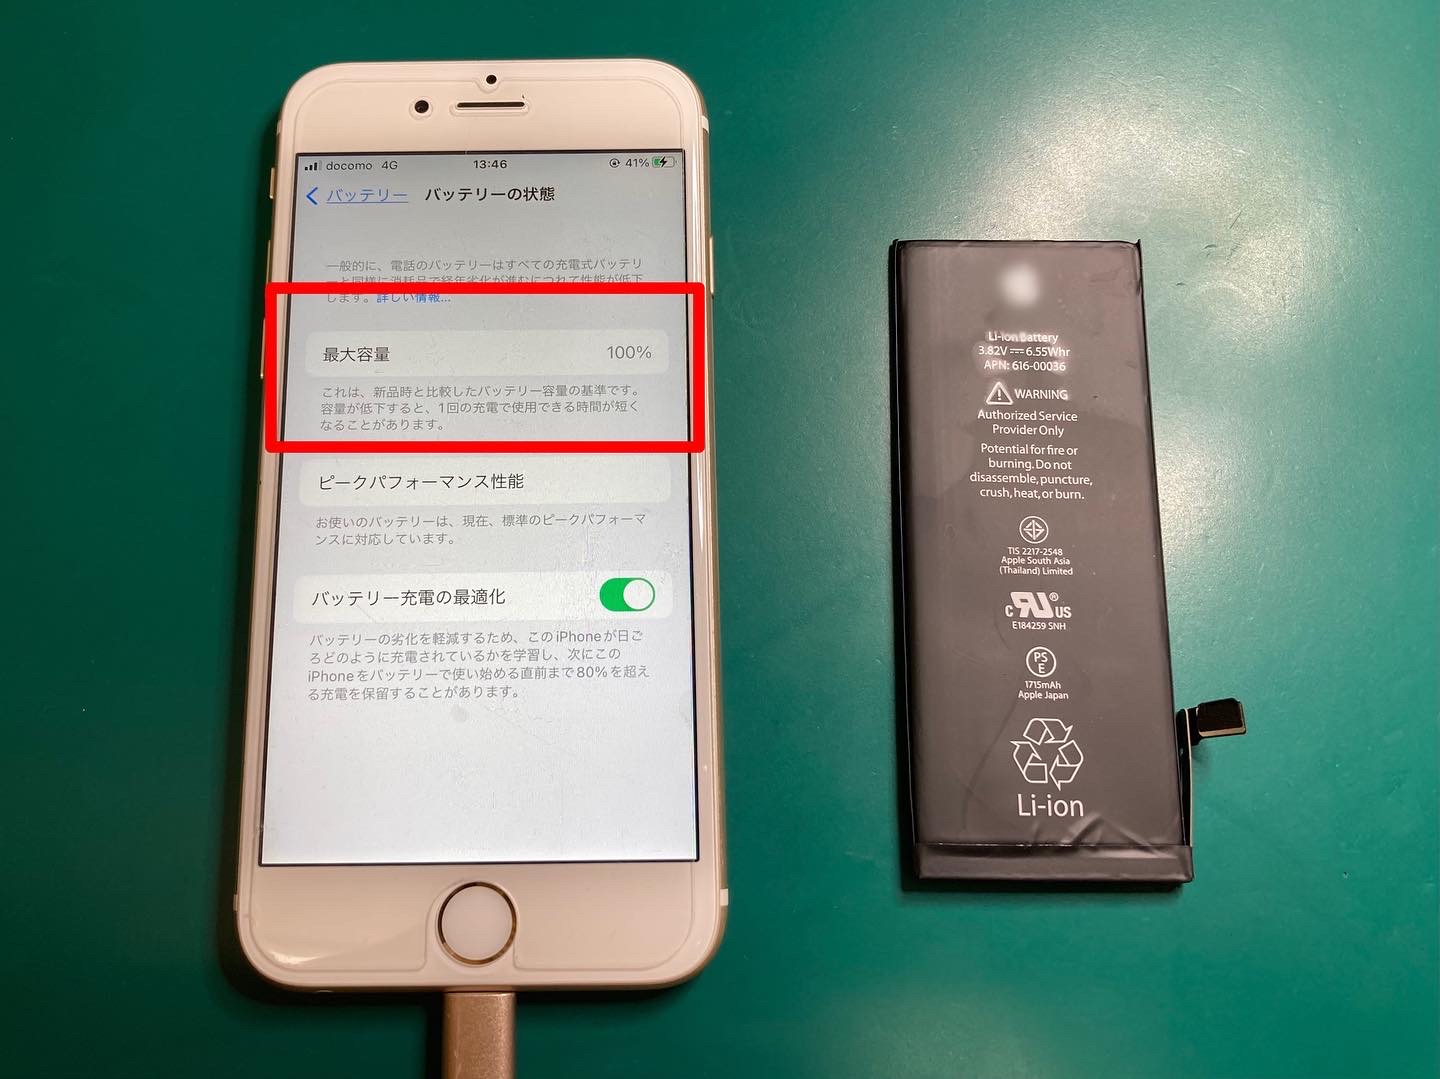 充電ケーブルに接続していないと電源が落ちてしまうiPhone6sの症状、バッテリー交換修理で解消できました。